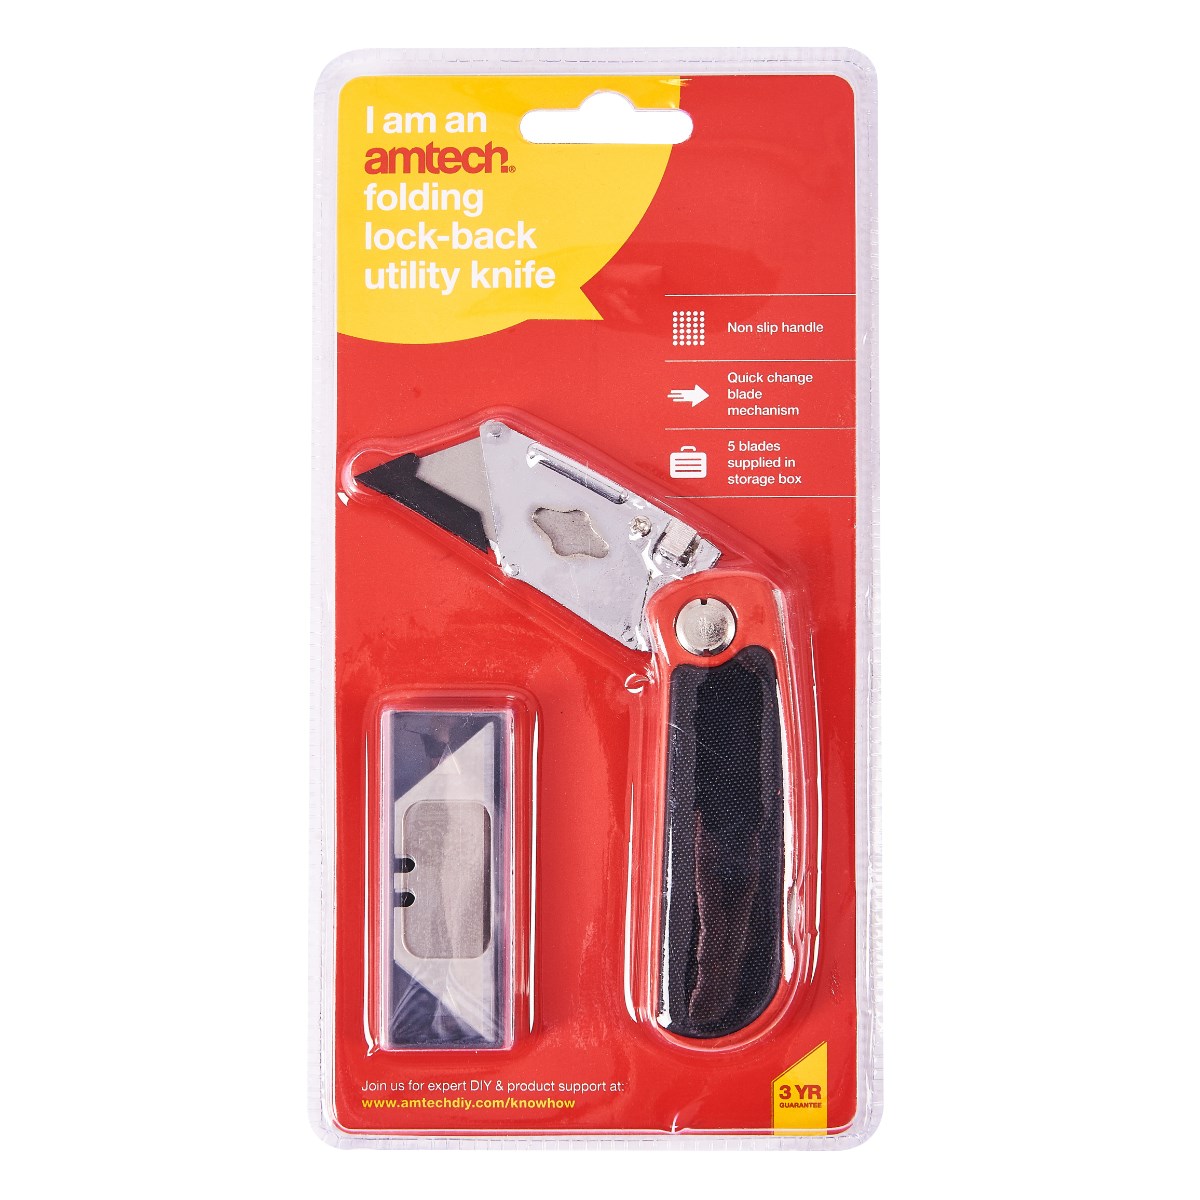 Amtech - Folding Utility Knife